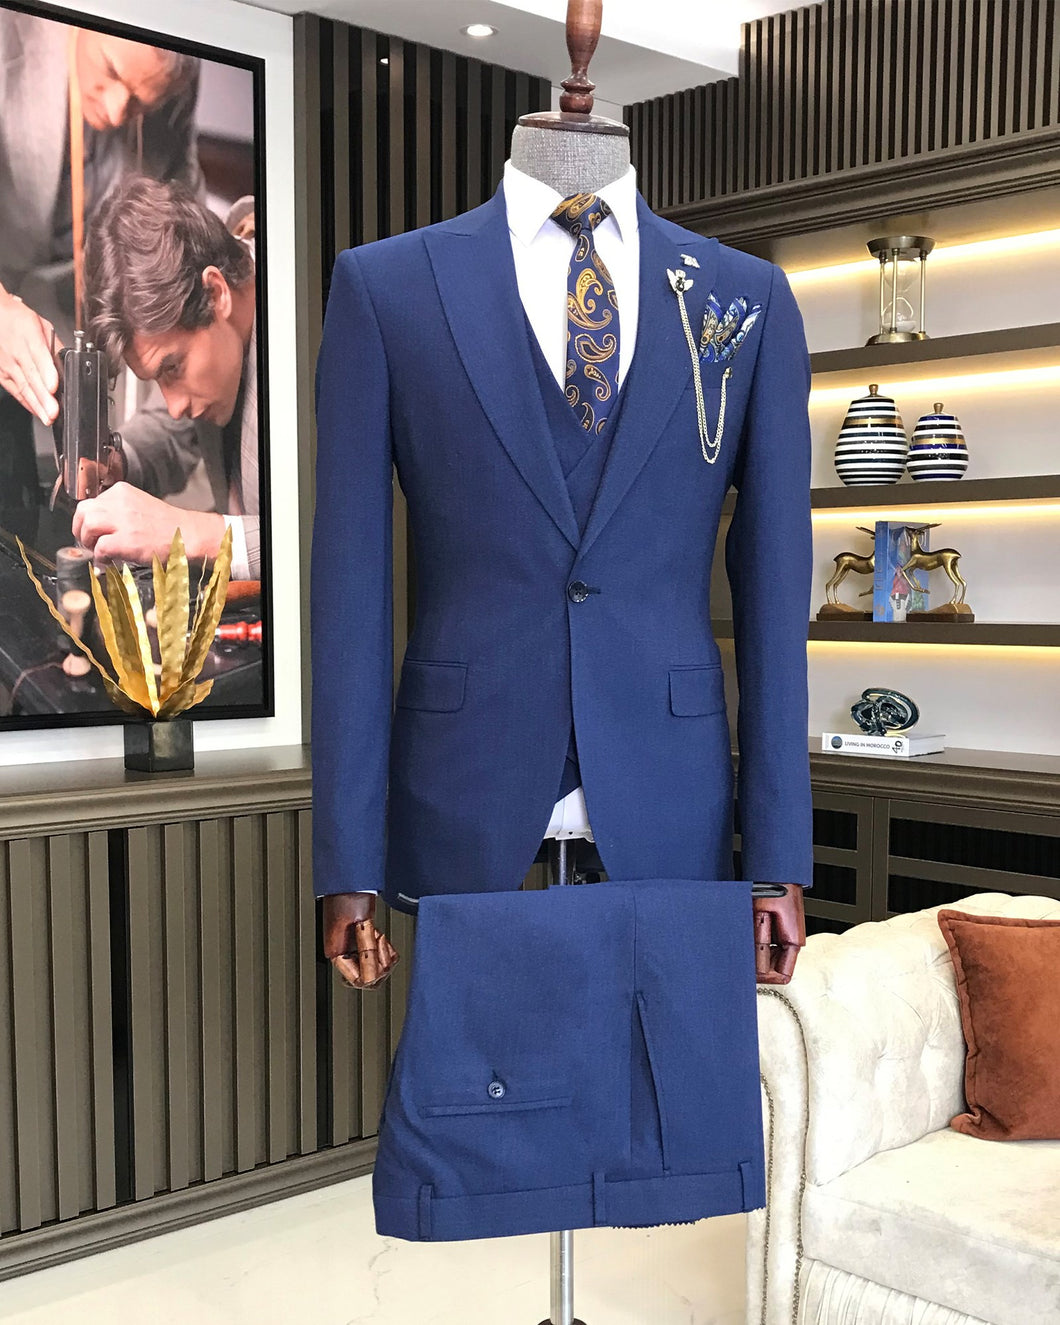 Benedict Slim Fit Solid Dark Blue Suit